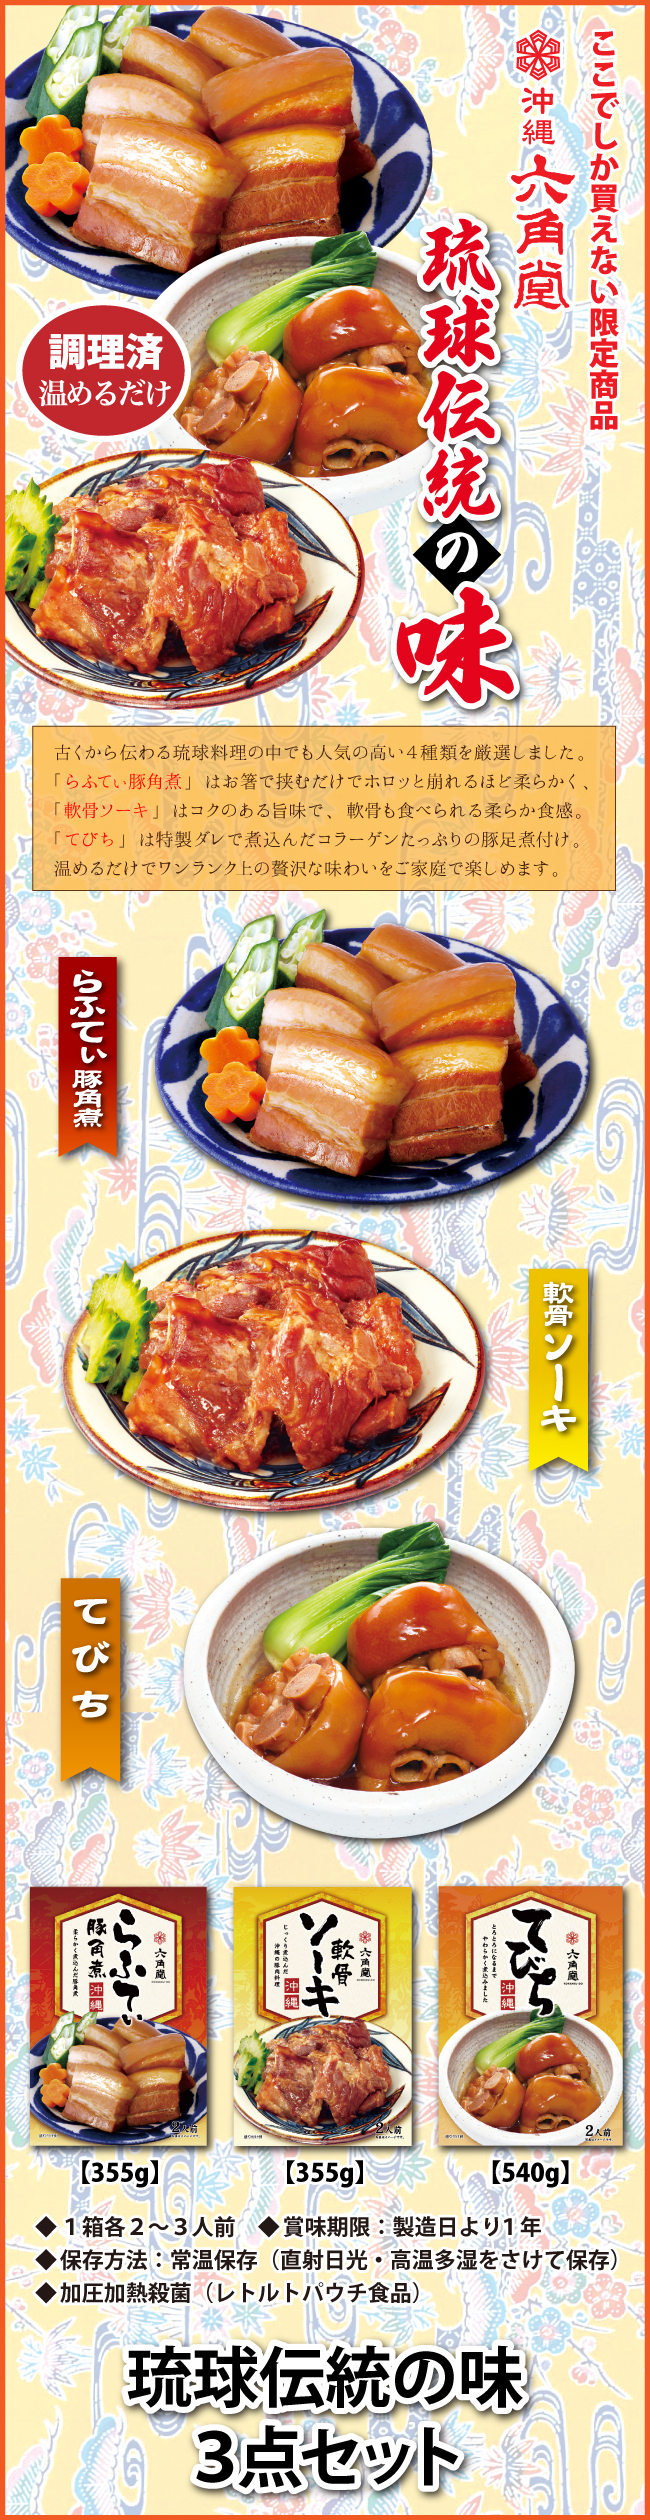 沖縄伝統の味３点セットの商品詳細説明。軟骨ソーキ・テビチ・ラフティ・本格的な琉球料理を全国のご家庭へ